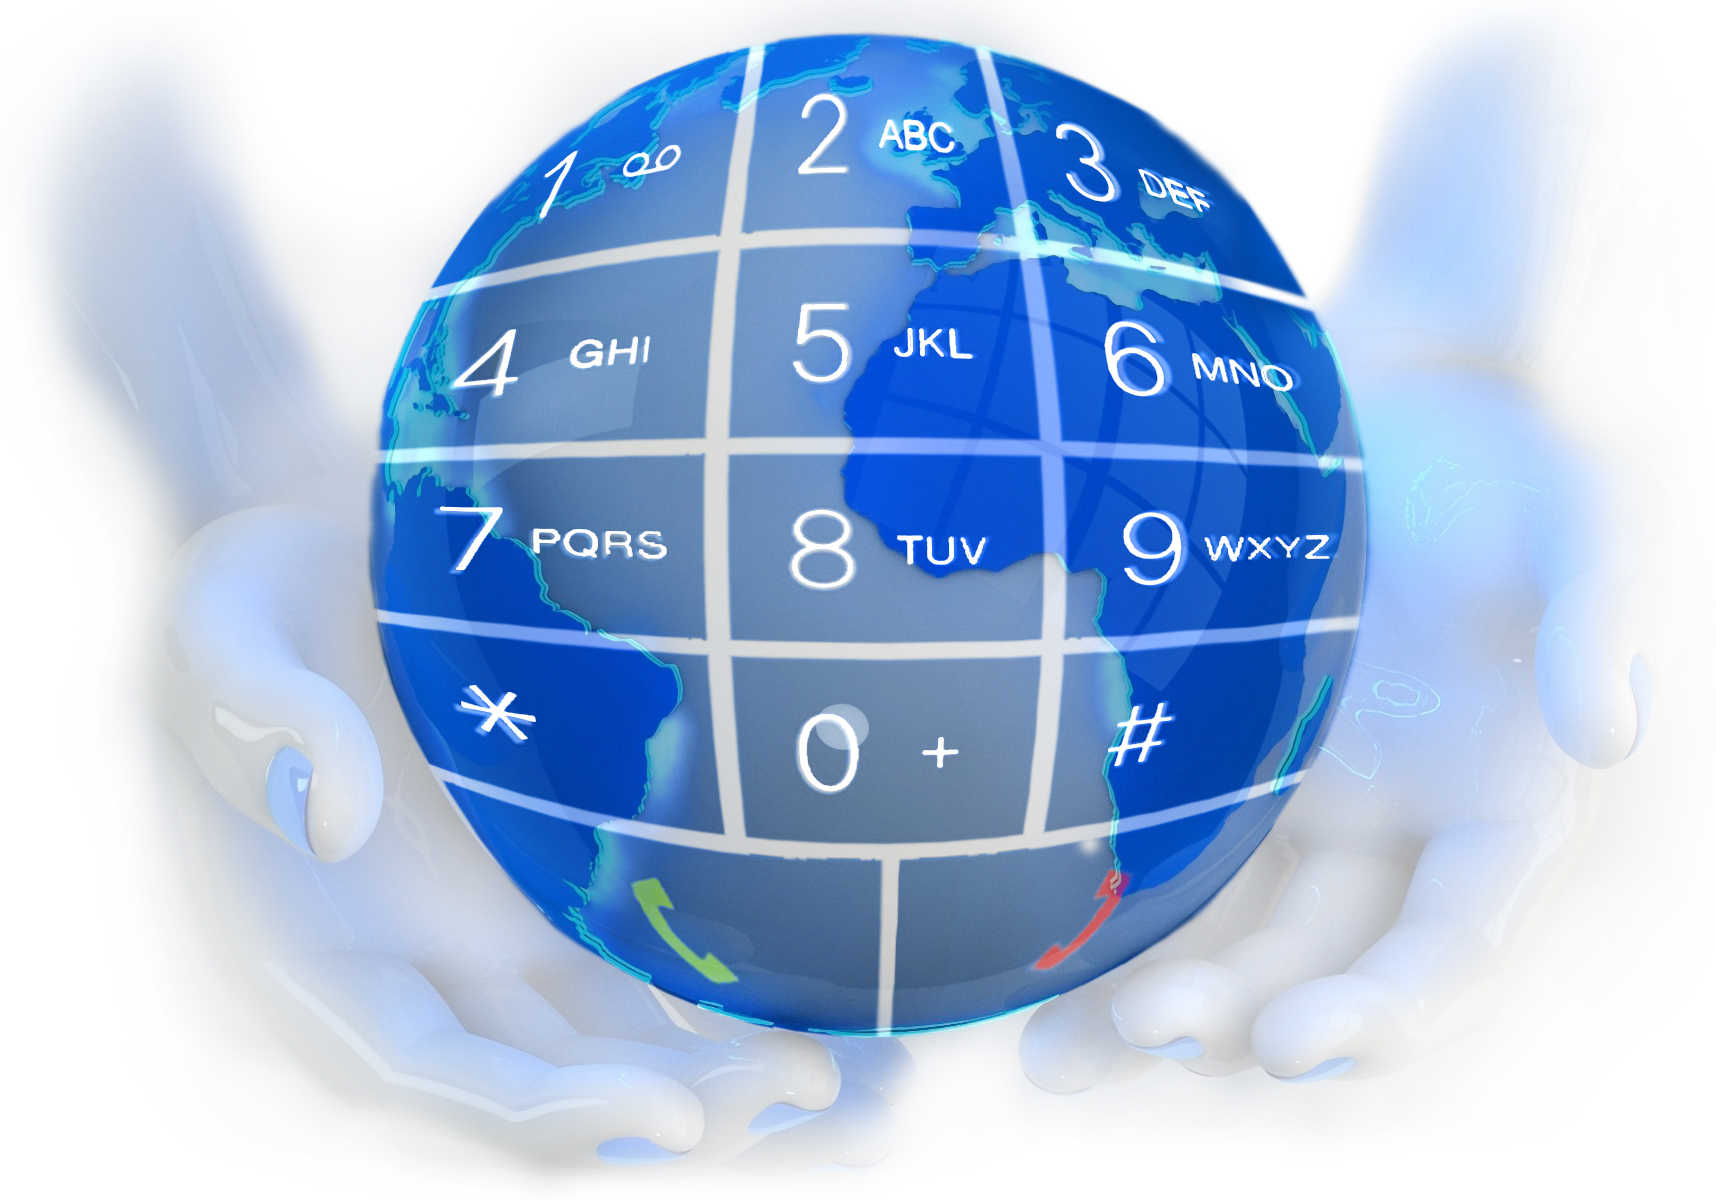 IP-телефоны Escene активно используются с облачным сервисом от Ростелекома